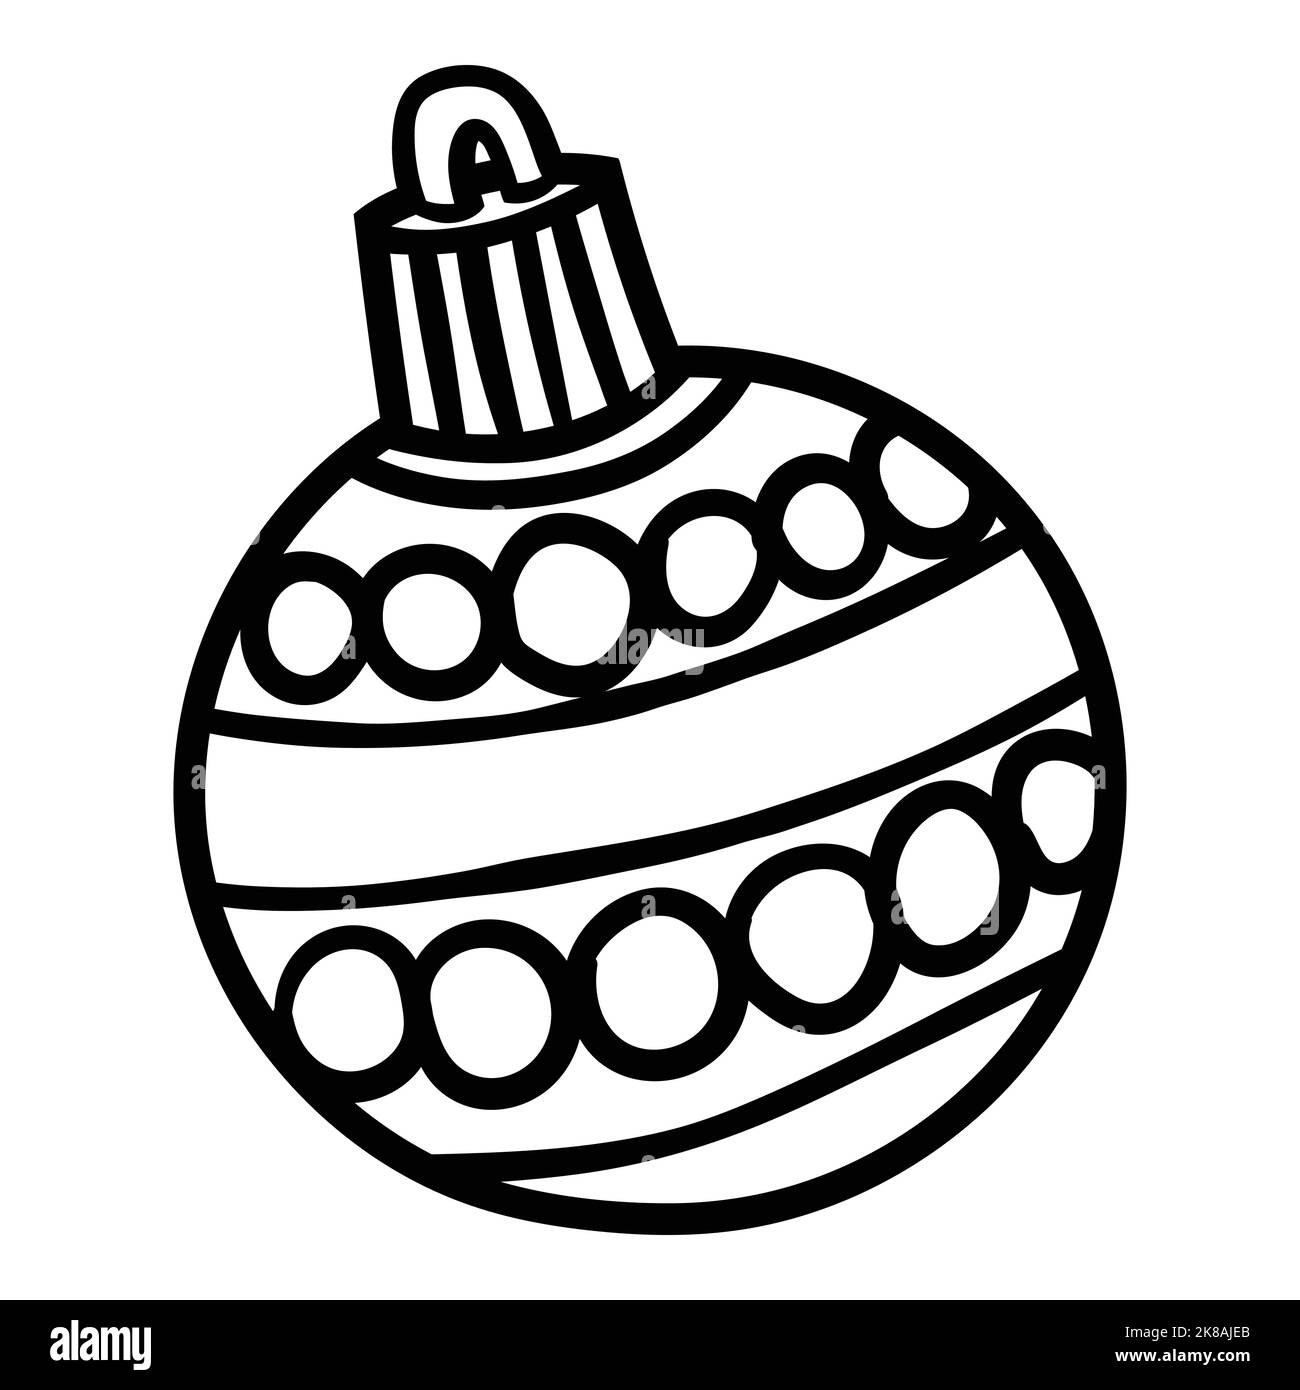 Illustrazione vettoriale isolata della sfera di Natale Illustrazione Vettoriale